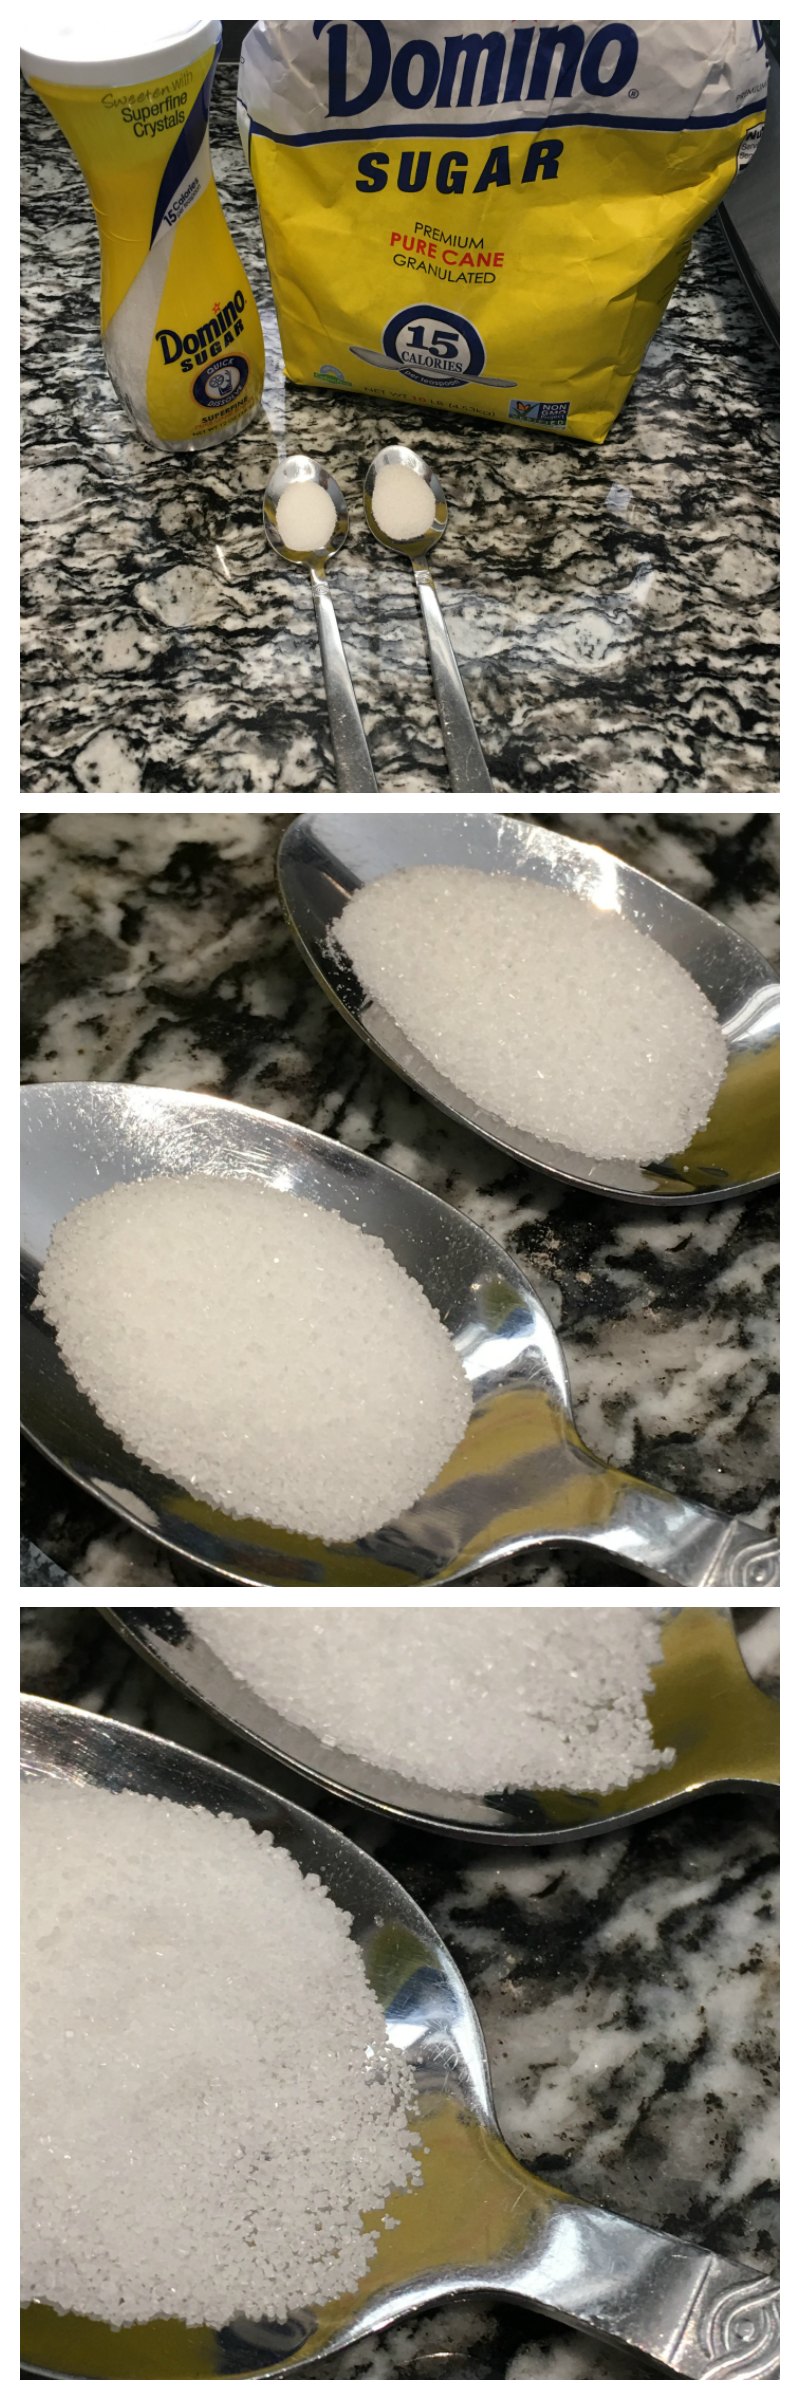 Domino® Quick Dissolve Superfine Sugar Comparison